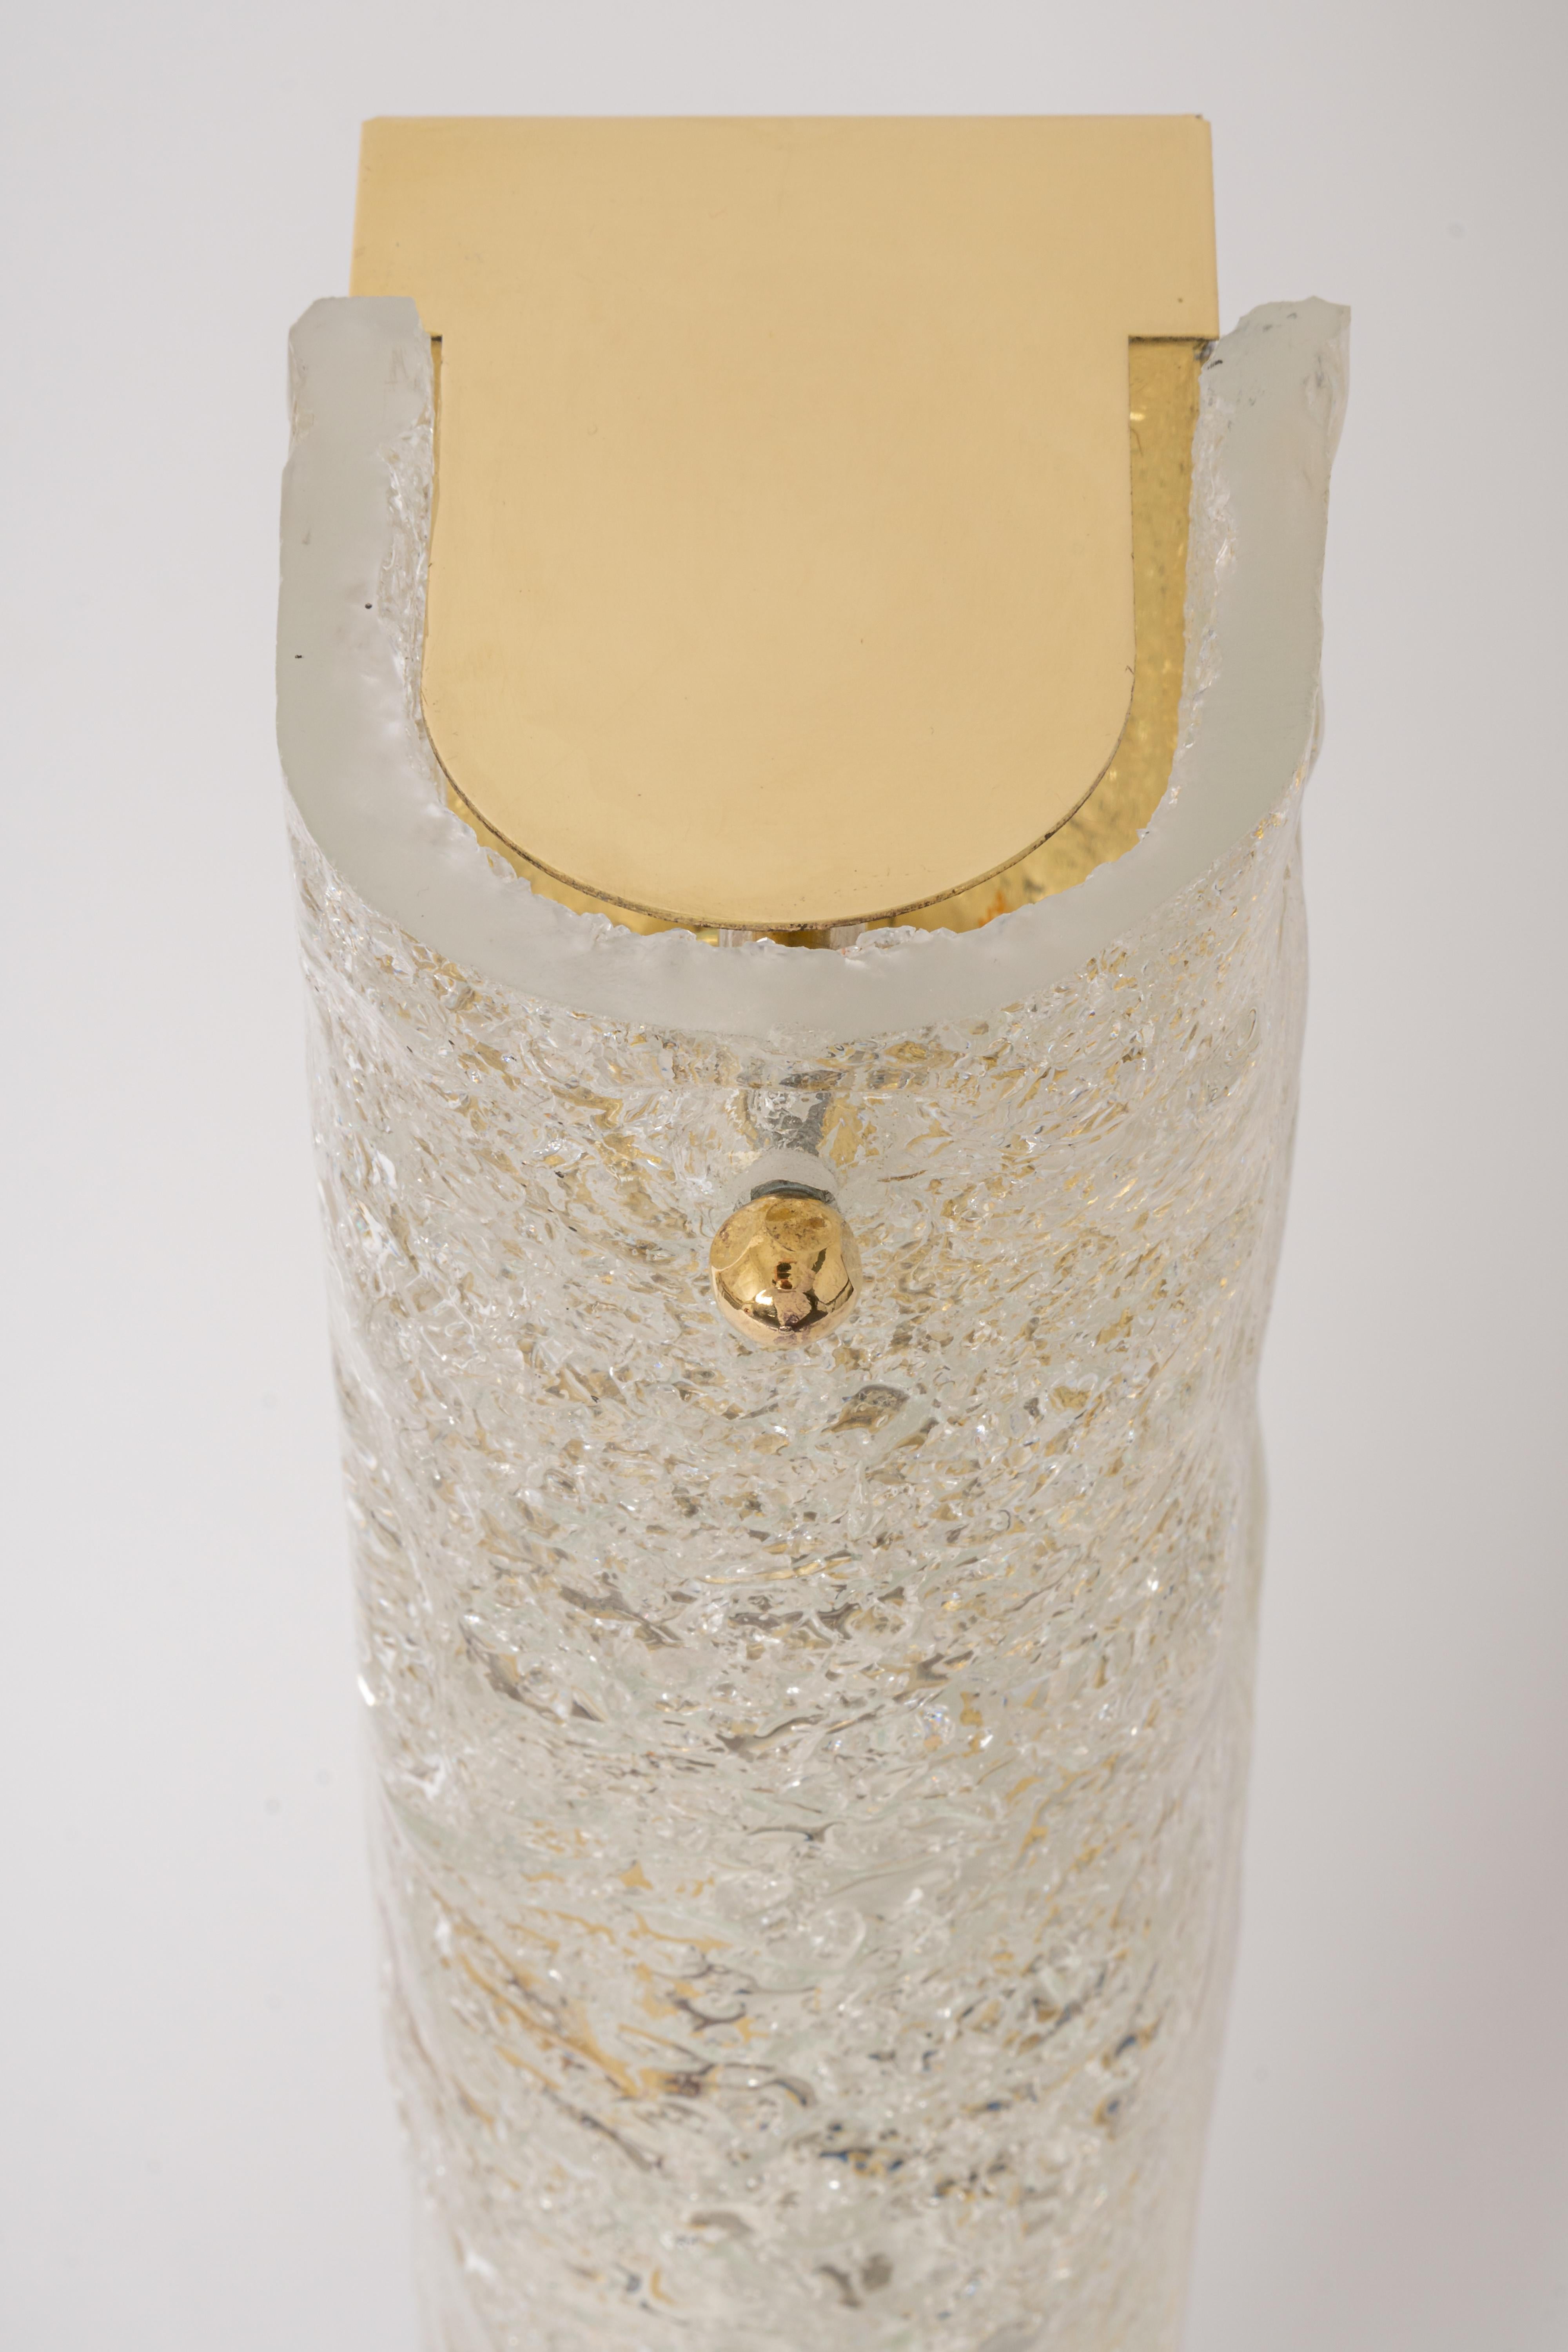 Paire de grandes appliques artisanales en verre de Murano sur une base en laiton par Hillebrand, Allemagne, vers les années 1960.

Elle se compose d'un abat-jour tubulaire en cristal clair de qualité texturée simulant la glace sur une monture en